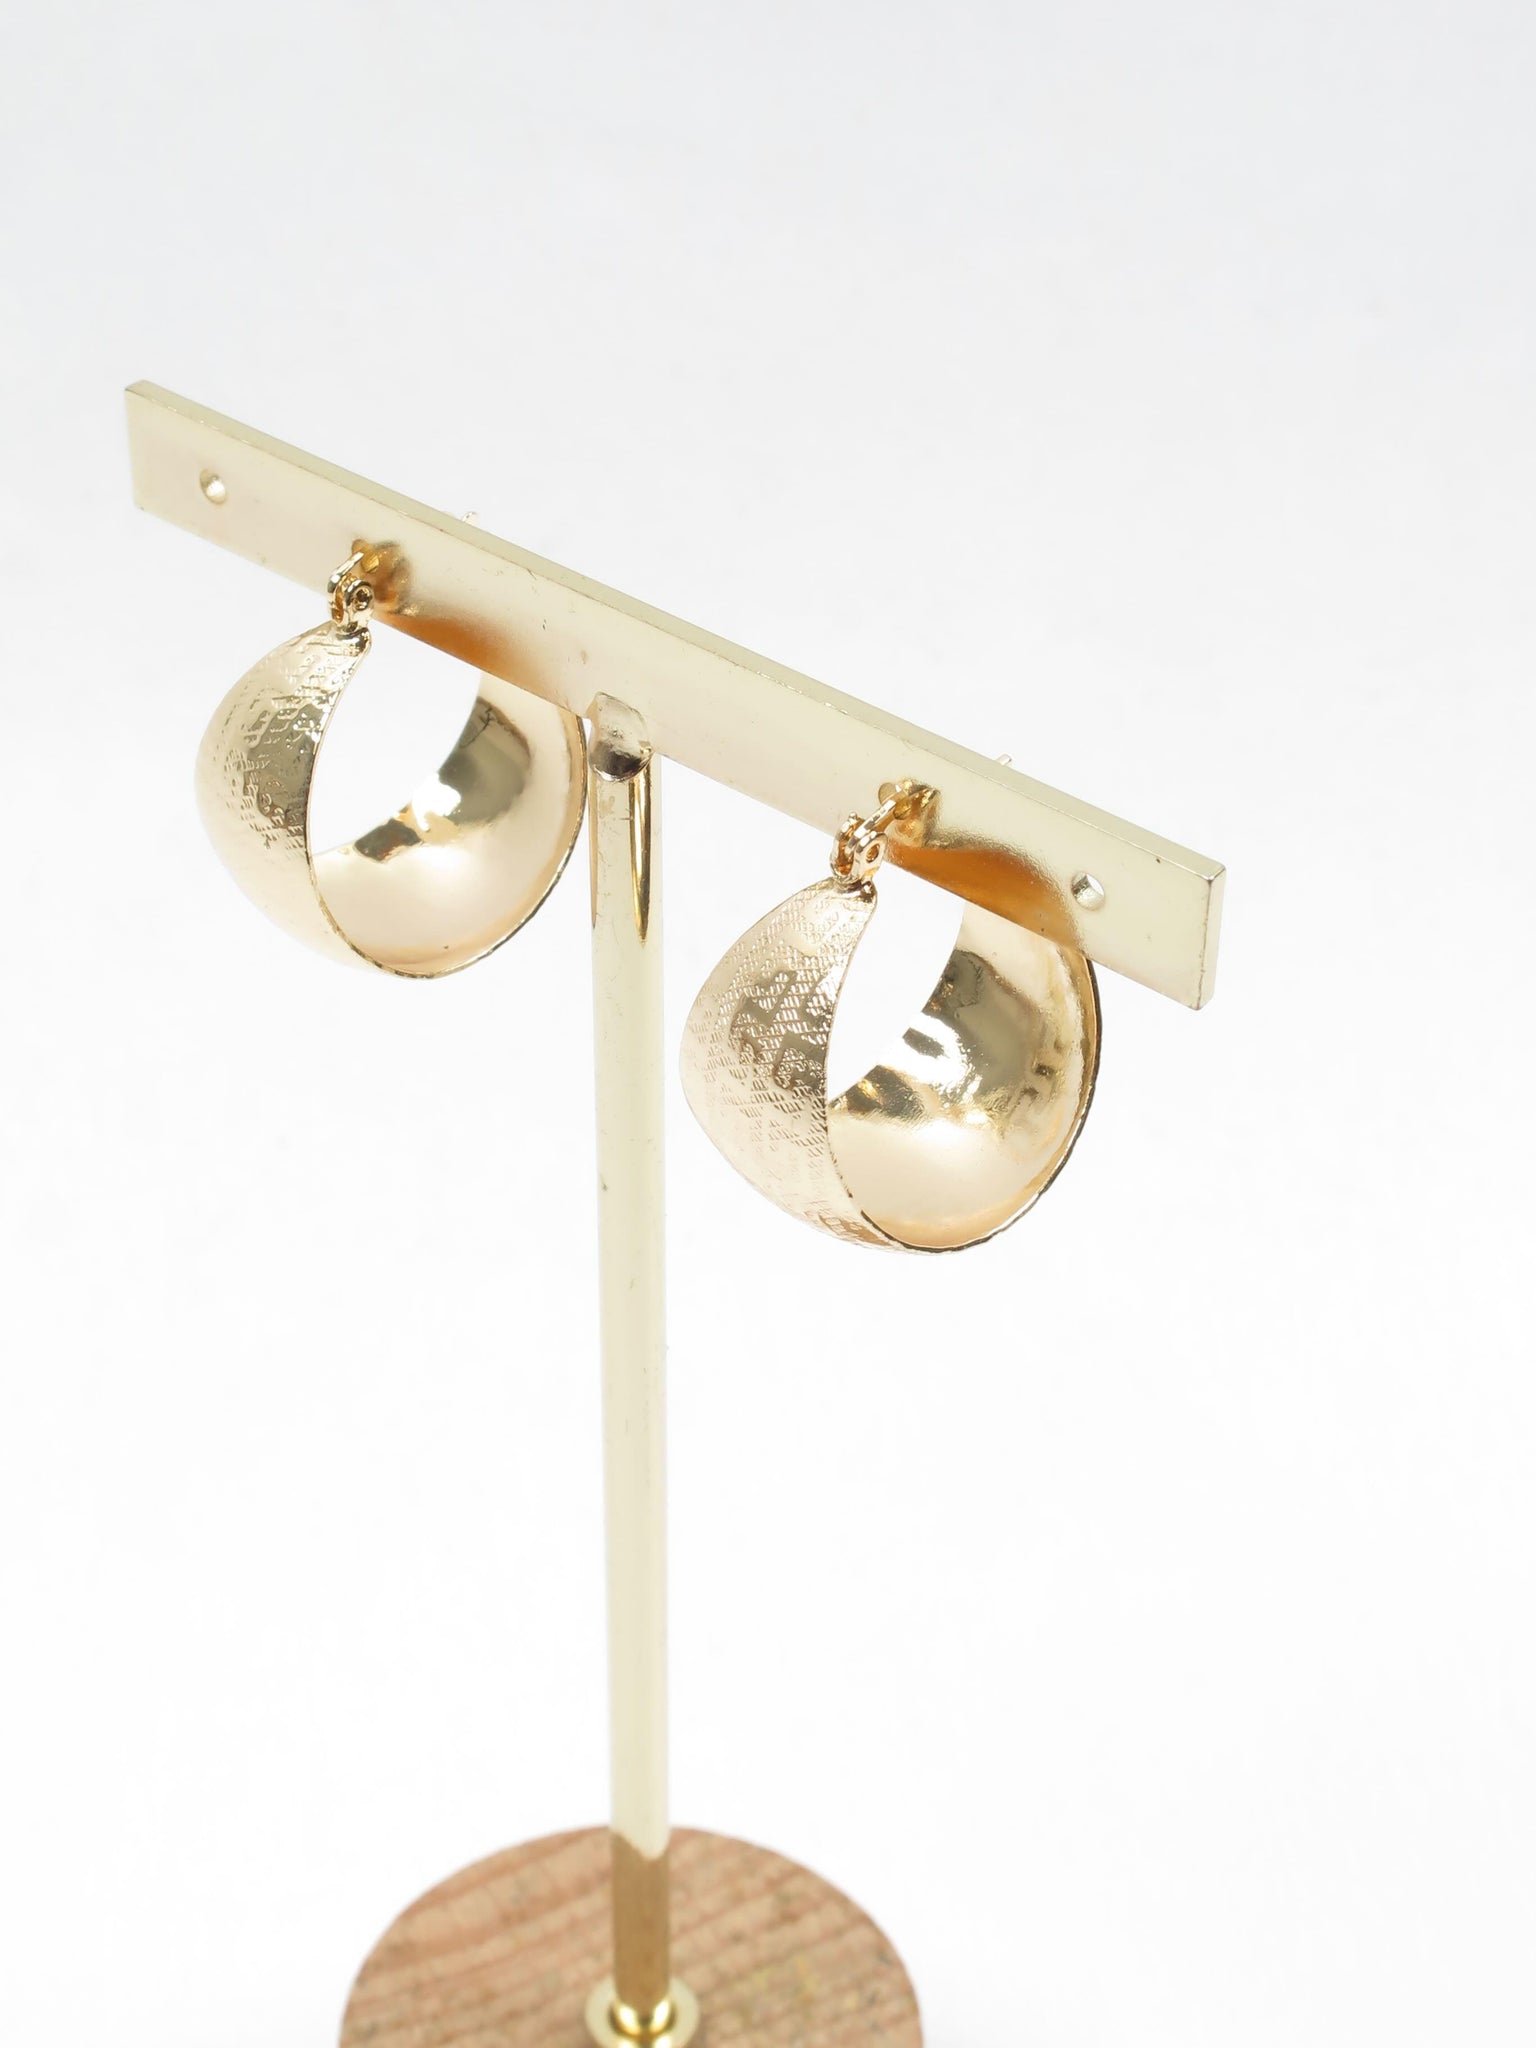 Gold Plated Wide Hoop Earrings With Greek Key Monogram - The Harlequin